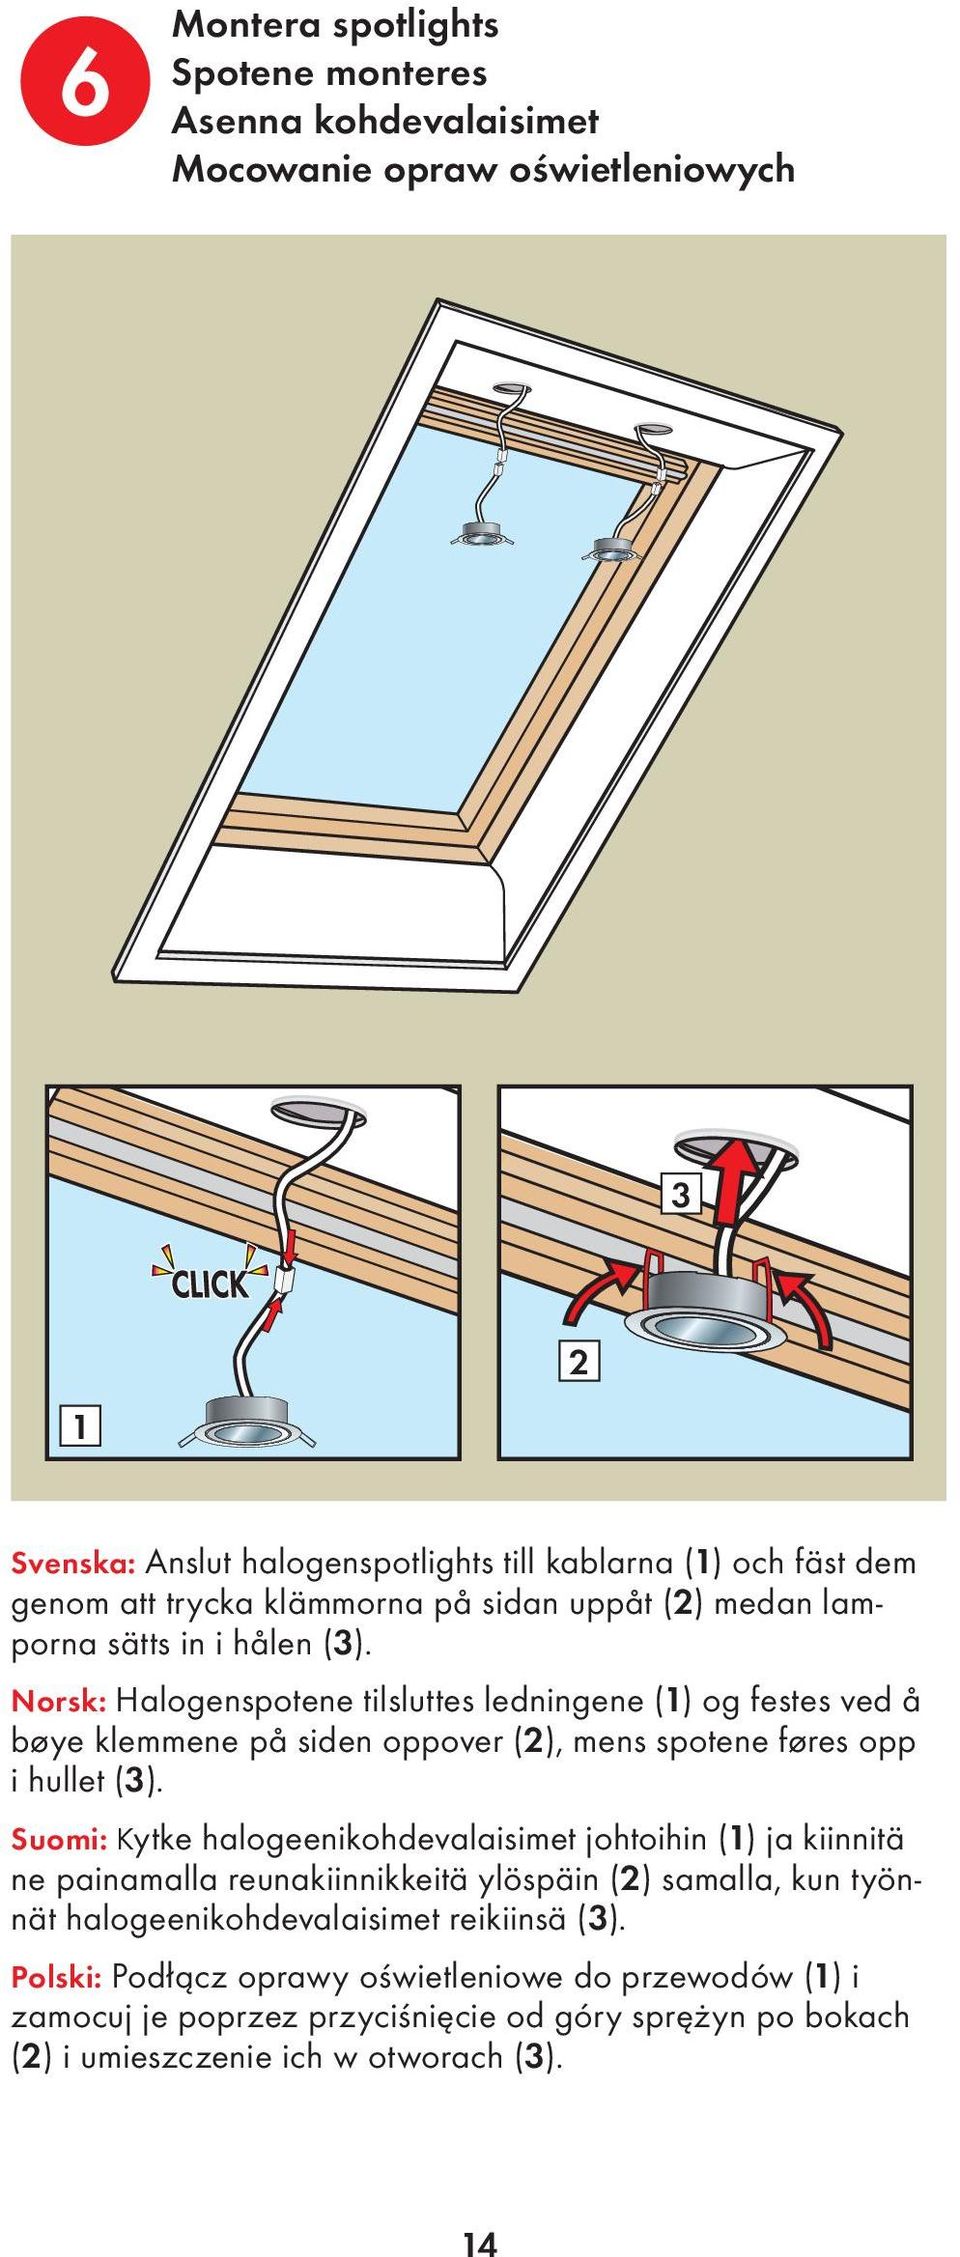 Norsk: Halogenspotene tilsluttes ledningene (1) og festes ved å bøye klemmene på siden oppover (2), mens spotene føres opp i hullet (3).